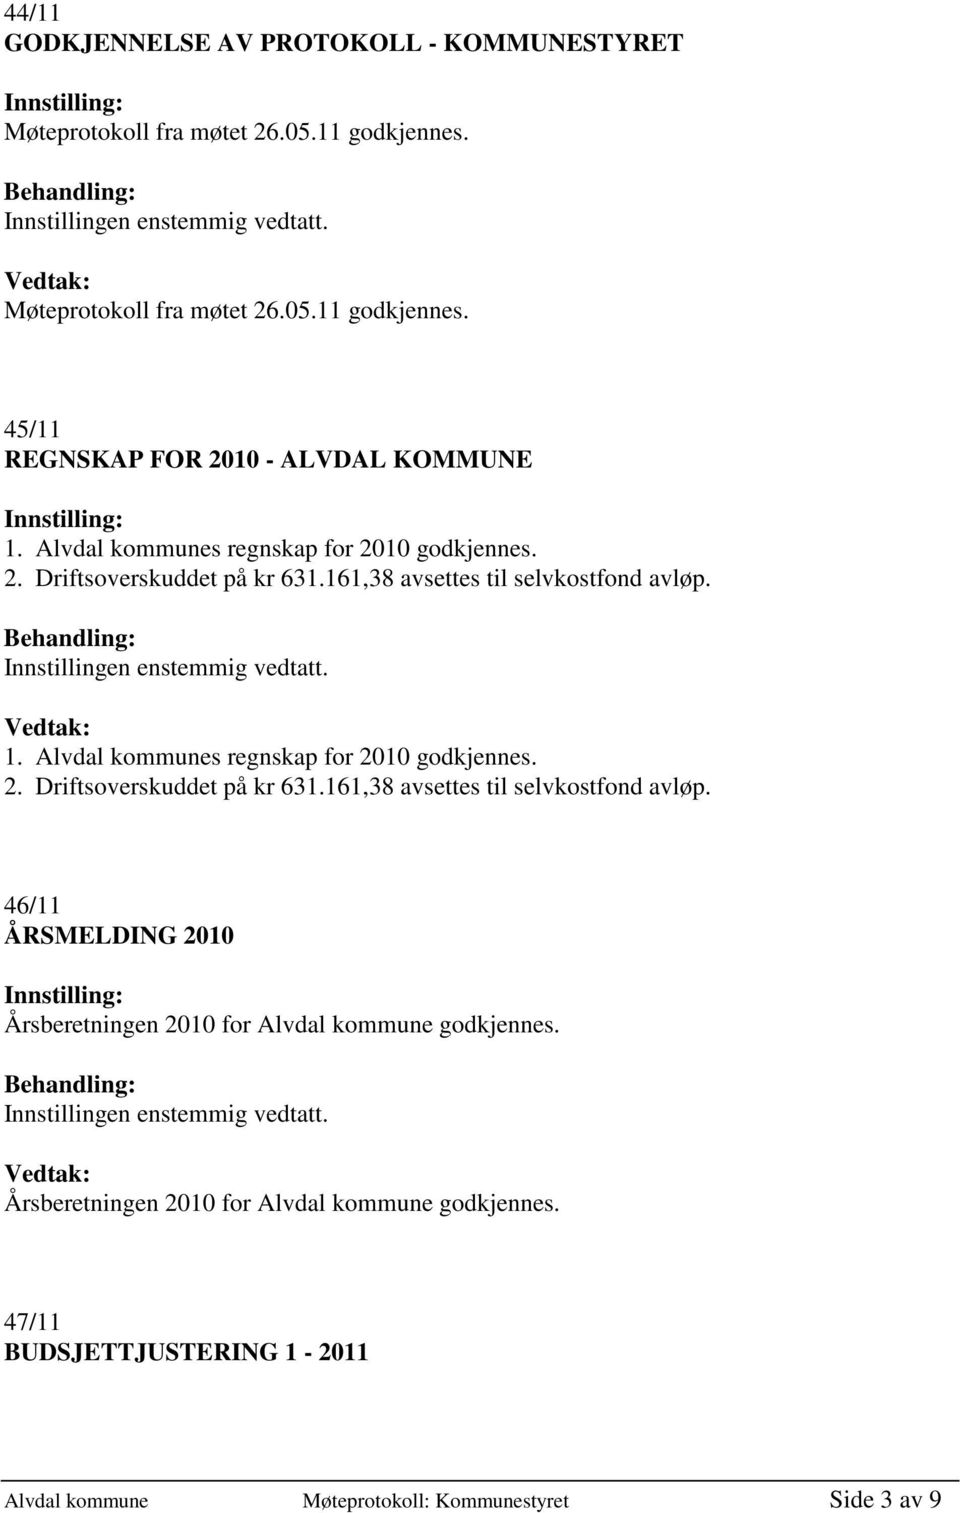 Alvdal kommunes regnskap for 2010 godkjennes. 2. Driftsoverskuddet på kr 631.161,38 avsettes til selvkostfond avløp.